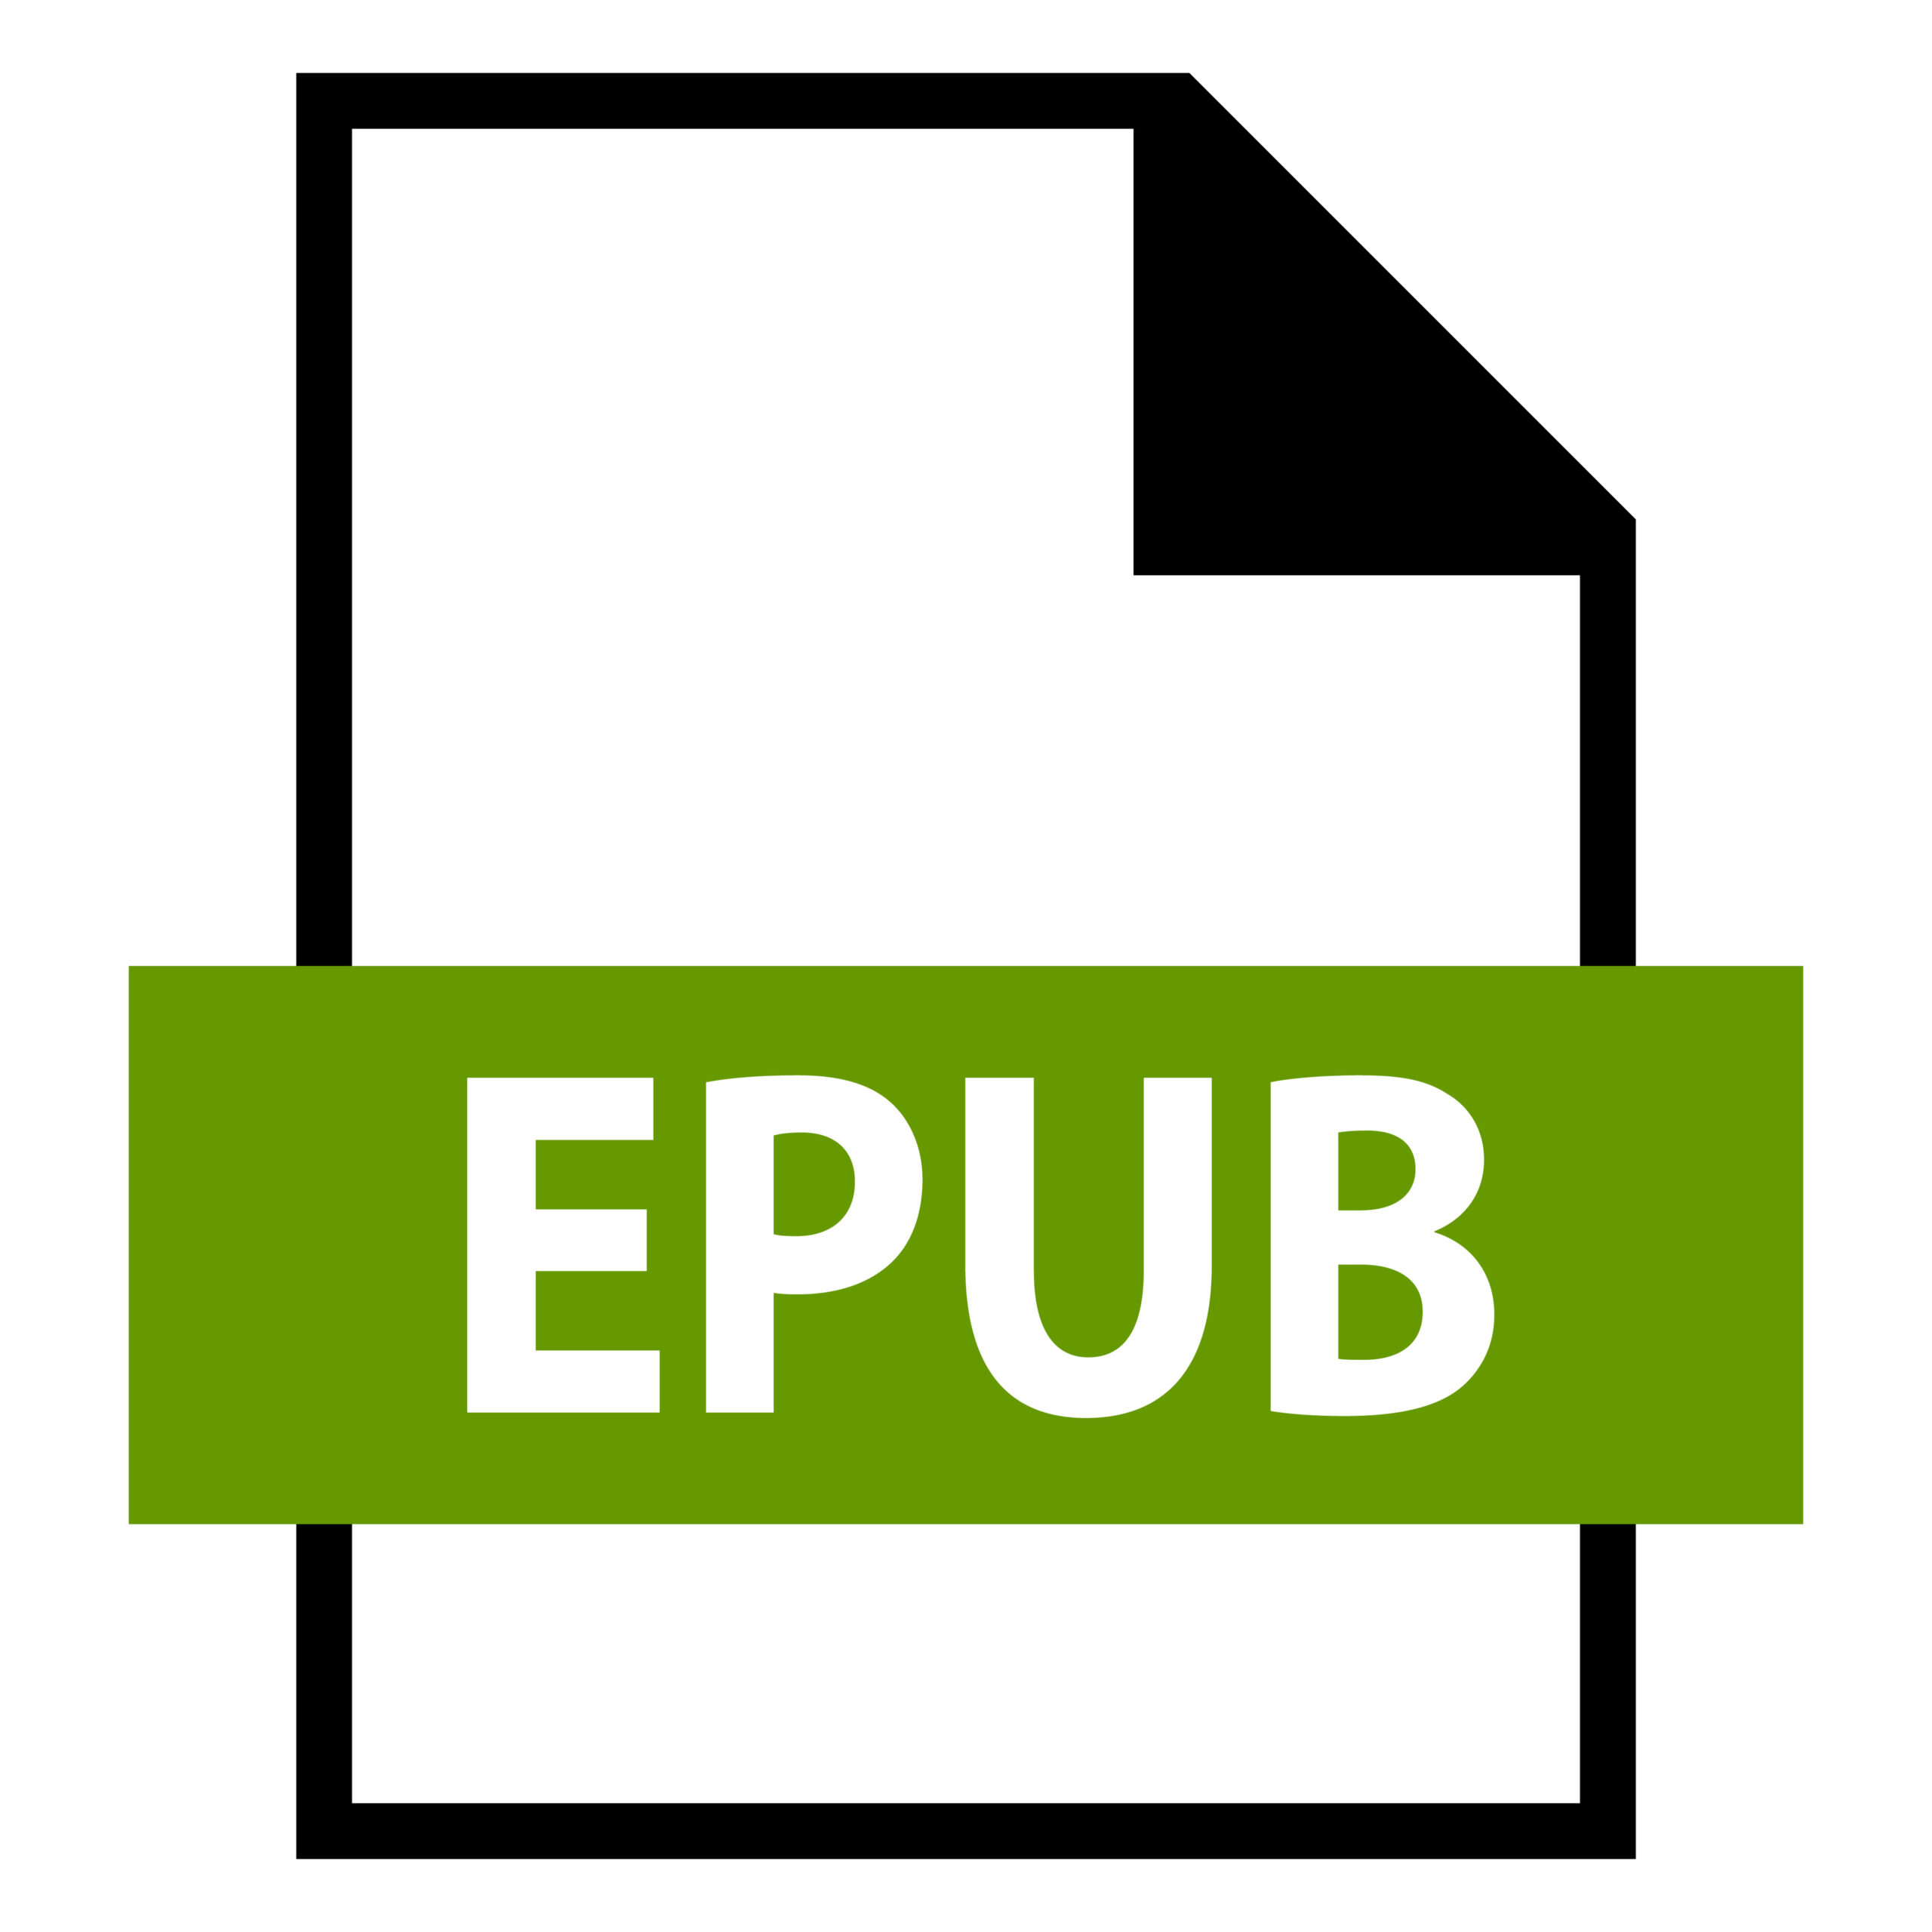 Symbolic image: EPUB